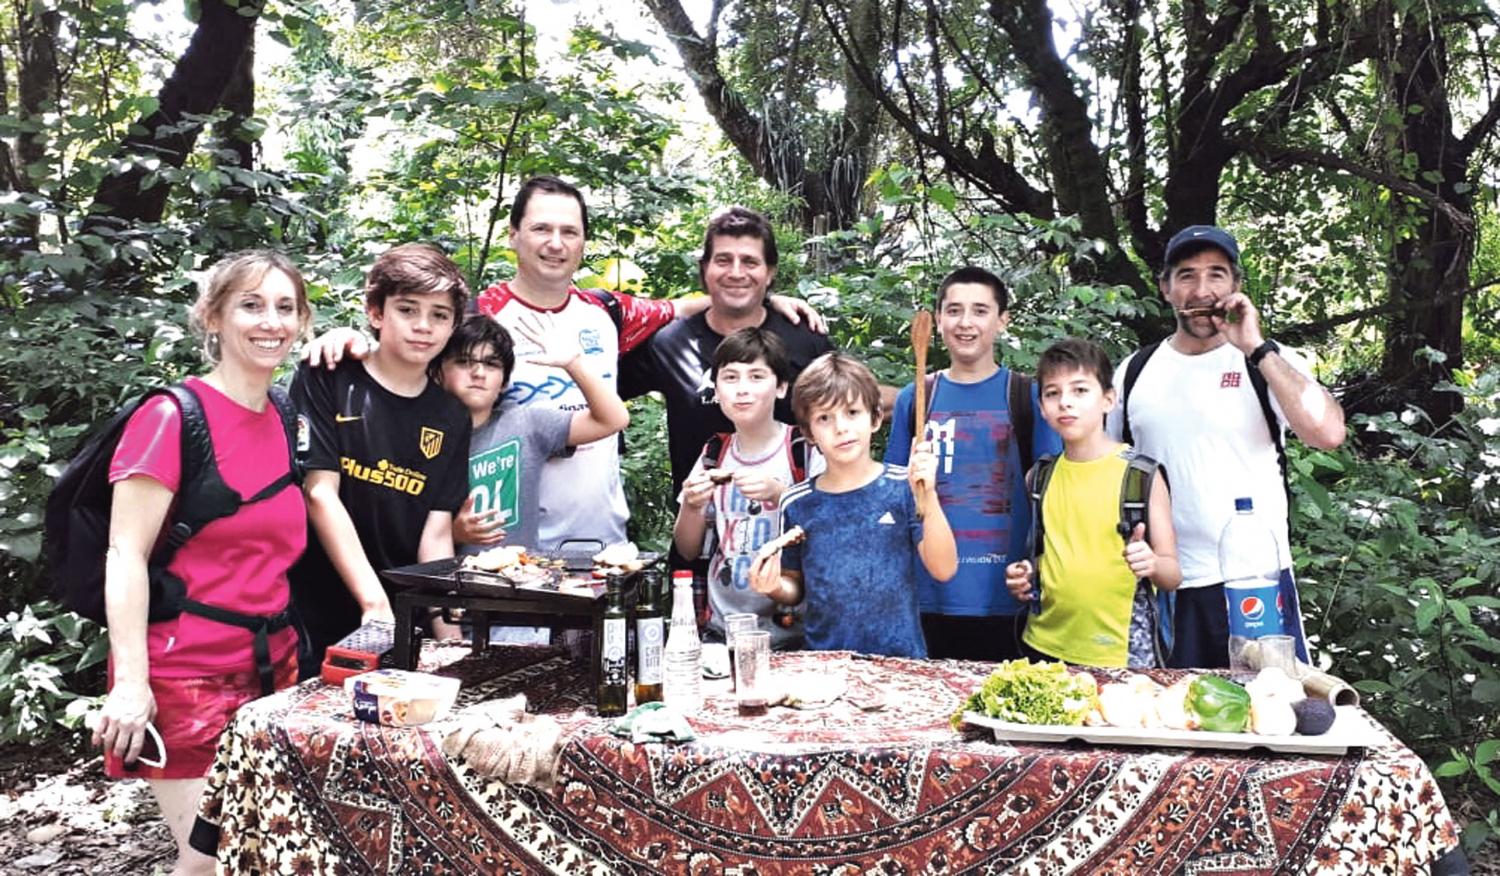 FINAL FELIZ. Rieznik junto a su familia y amigos comiendo con Maxi de LG play. FOTO DE DIEGO ARÁOZ